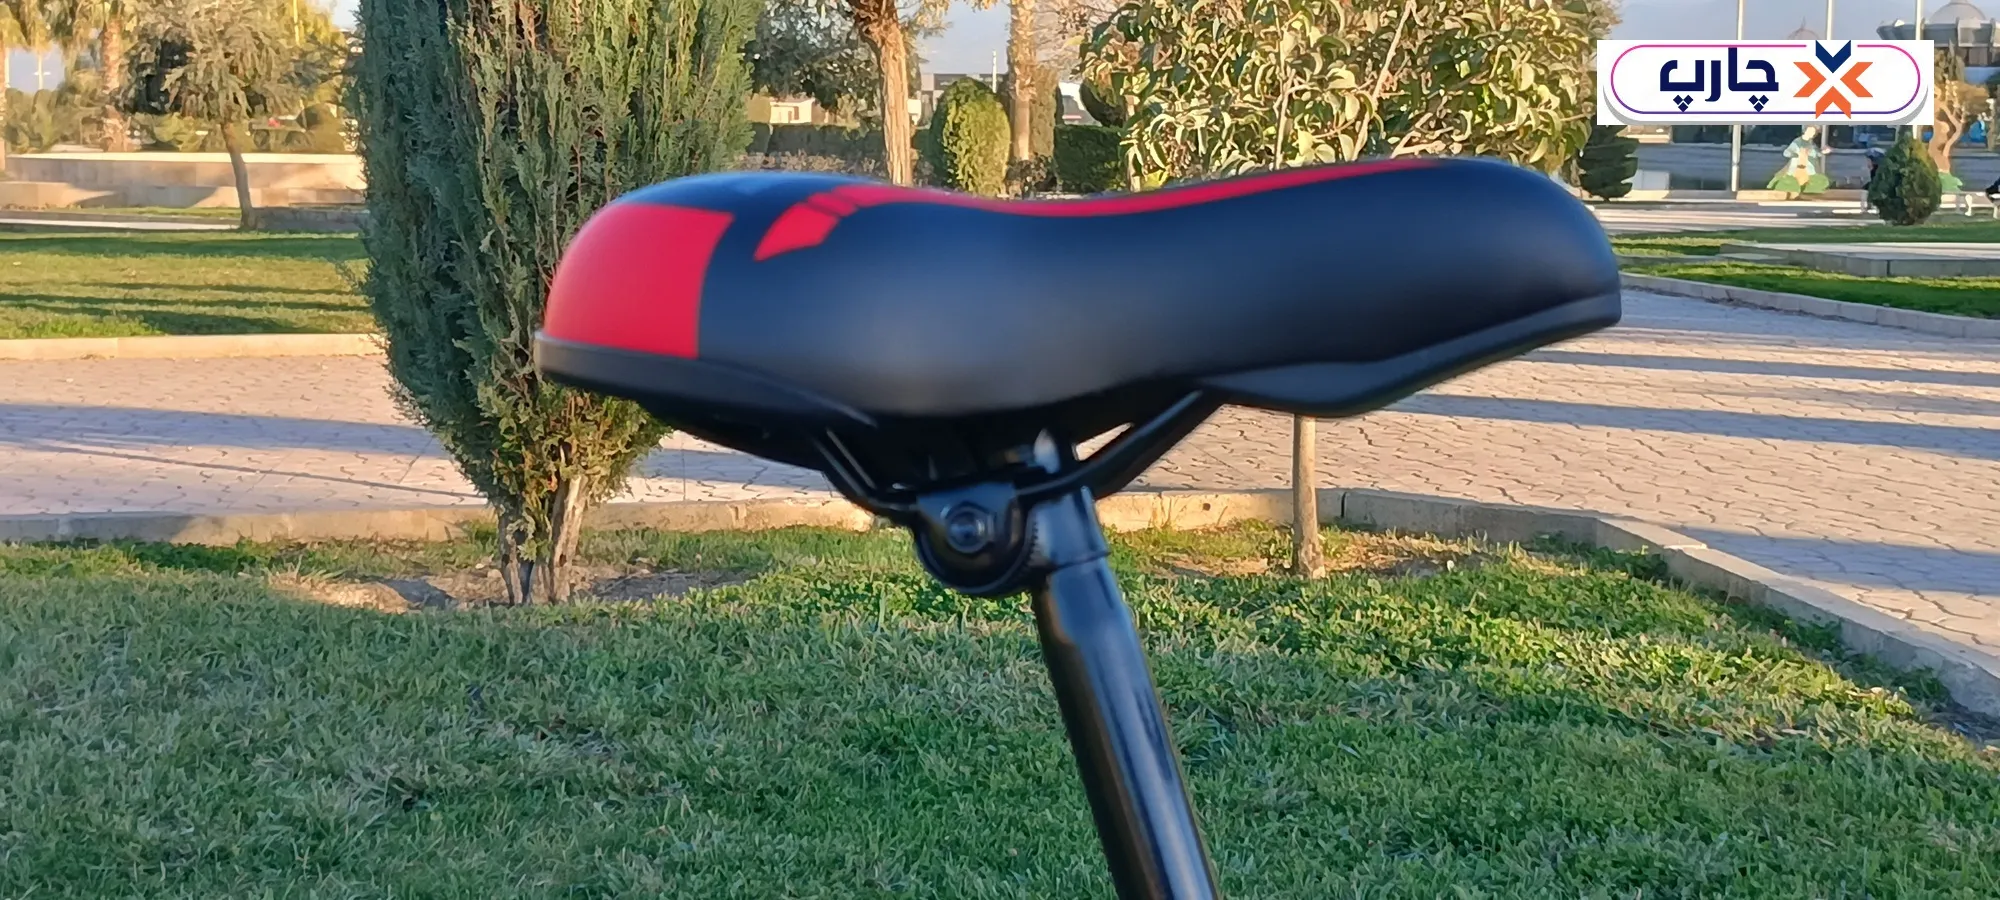 زین استفاده از دسته دنده 21 سرعته کلاج دار در دوچرخه سایز 26 دنده کلاجدار طرح المپیا رنگ مشکی قرمز